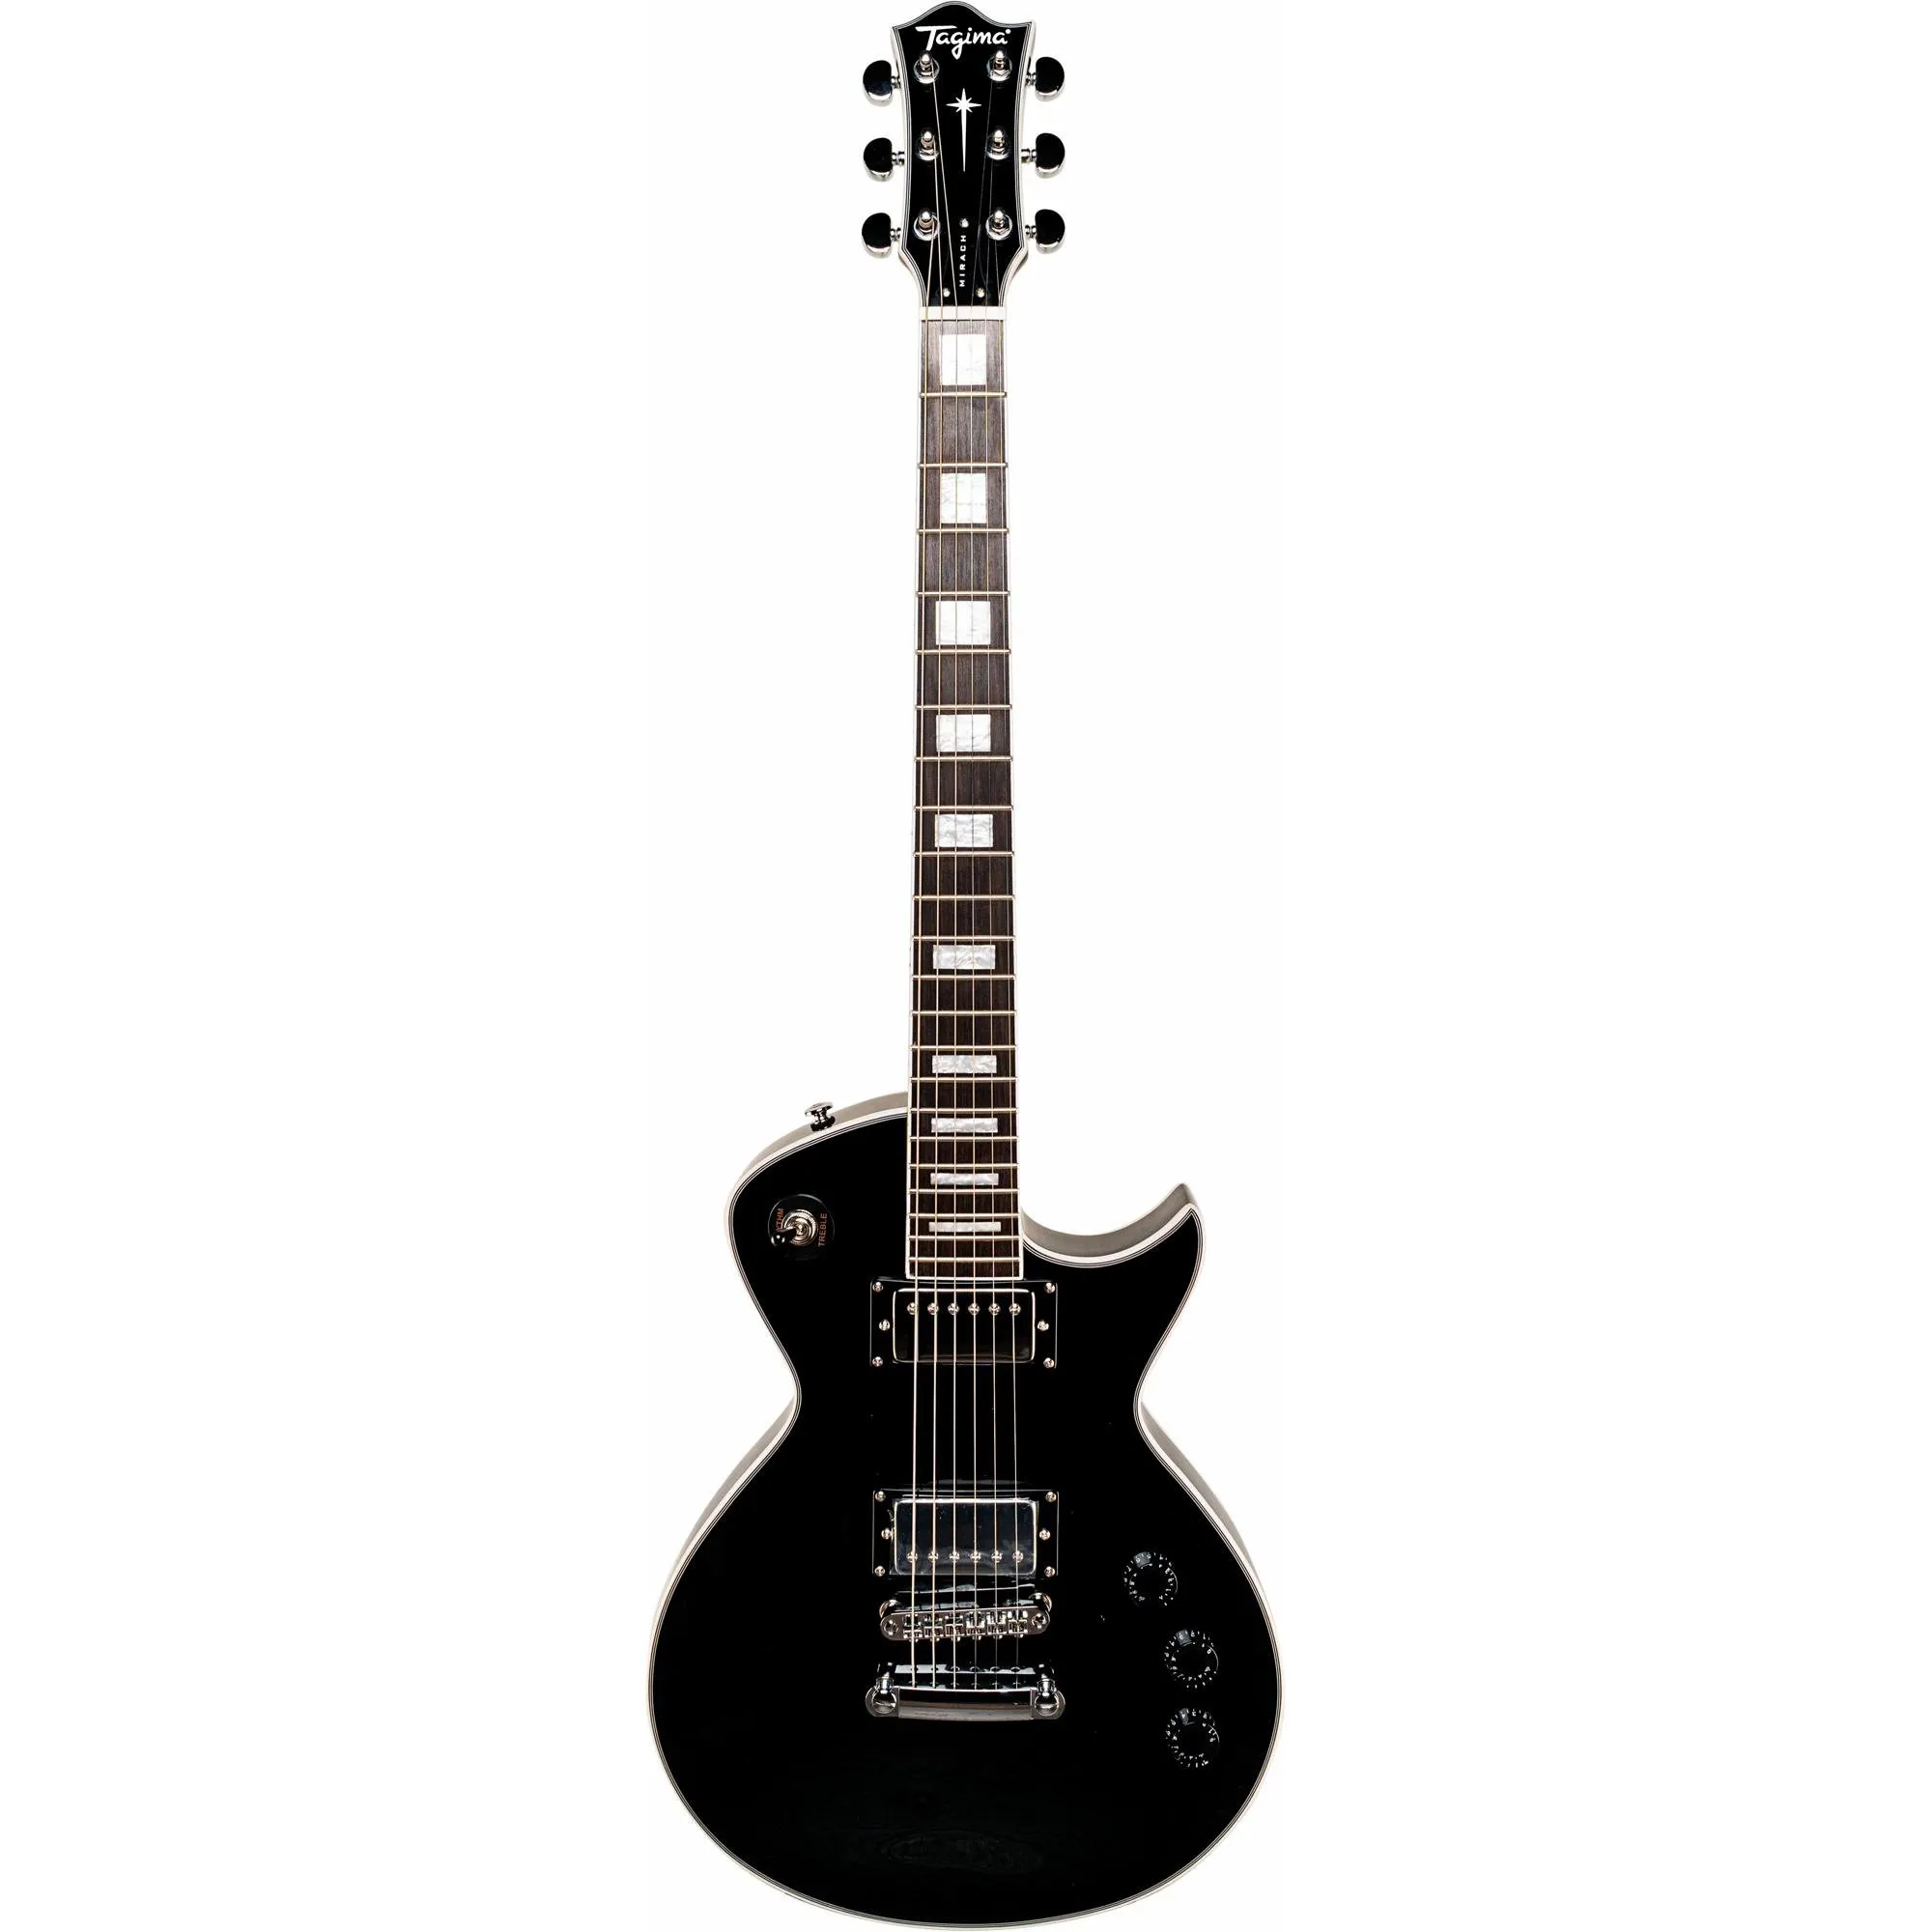 Guitarra Tagima Mirach Black C/ Case por 3.433,99 à vista no boleto/pix ou parcele em até 12x sem juros. Compre na loja Mundomax!